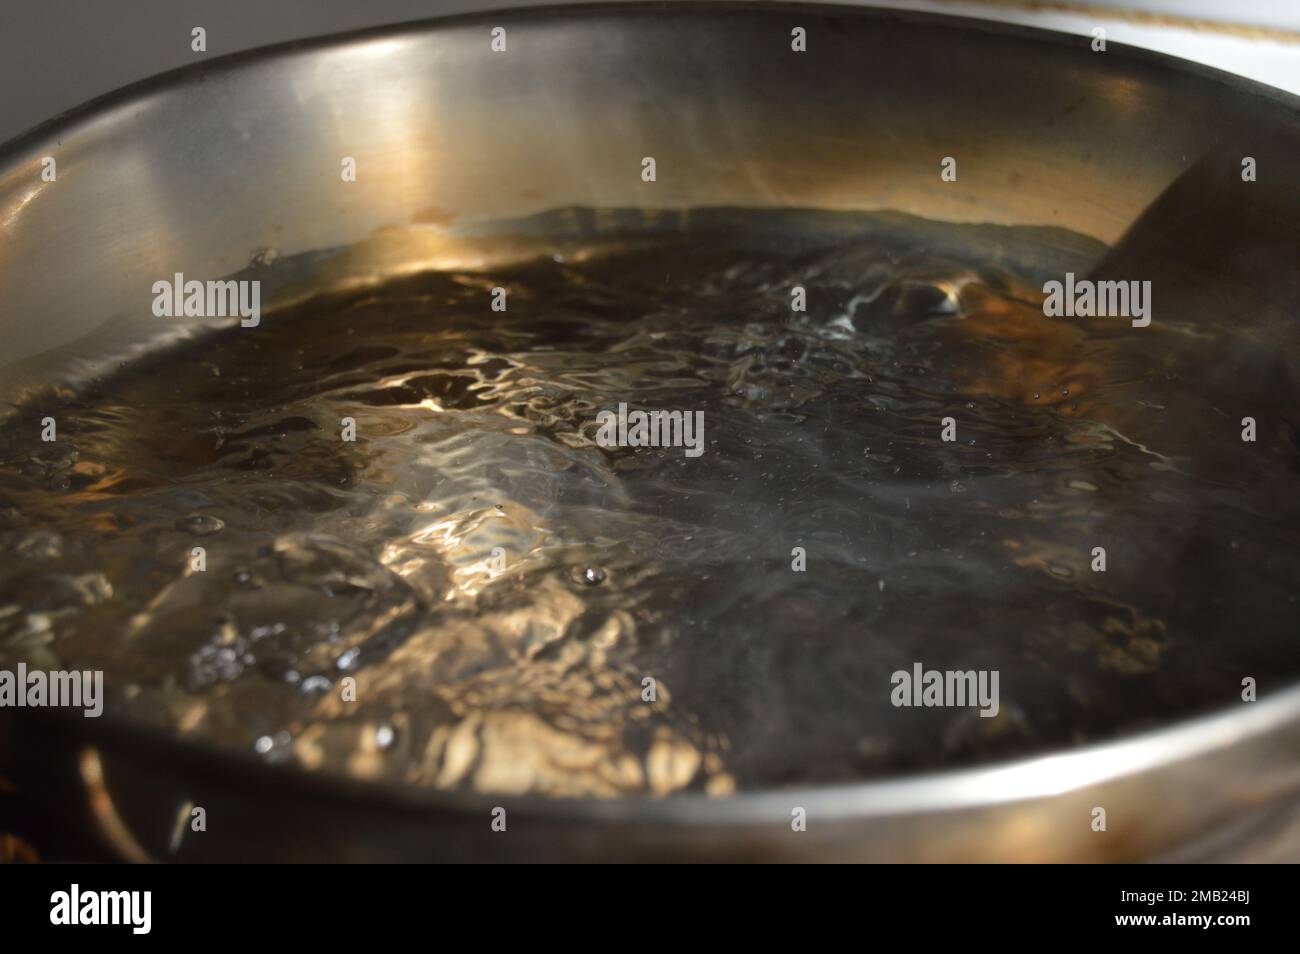 Porträt von kochendem Wasser in einem kochenden Topf. Stockfoto